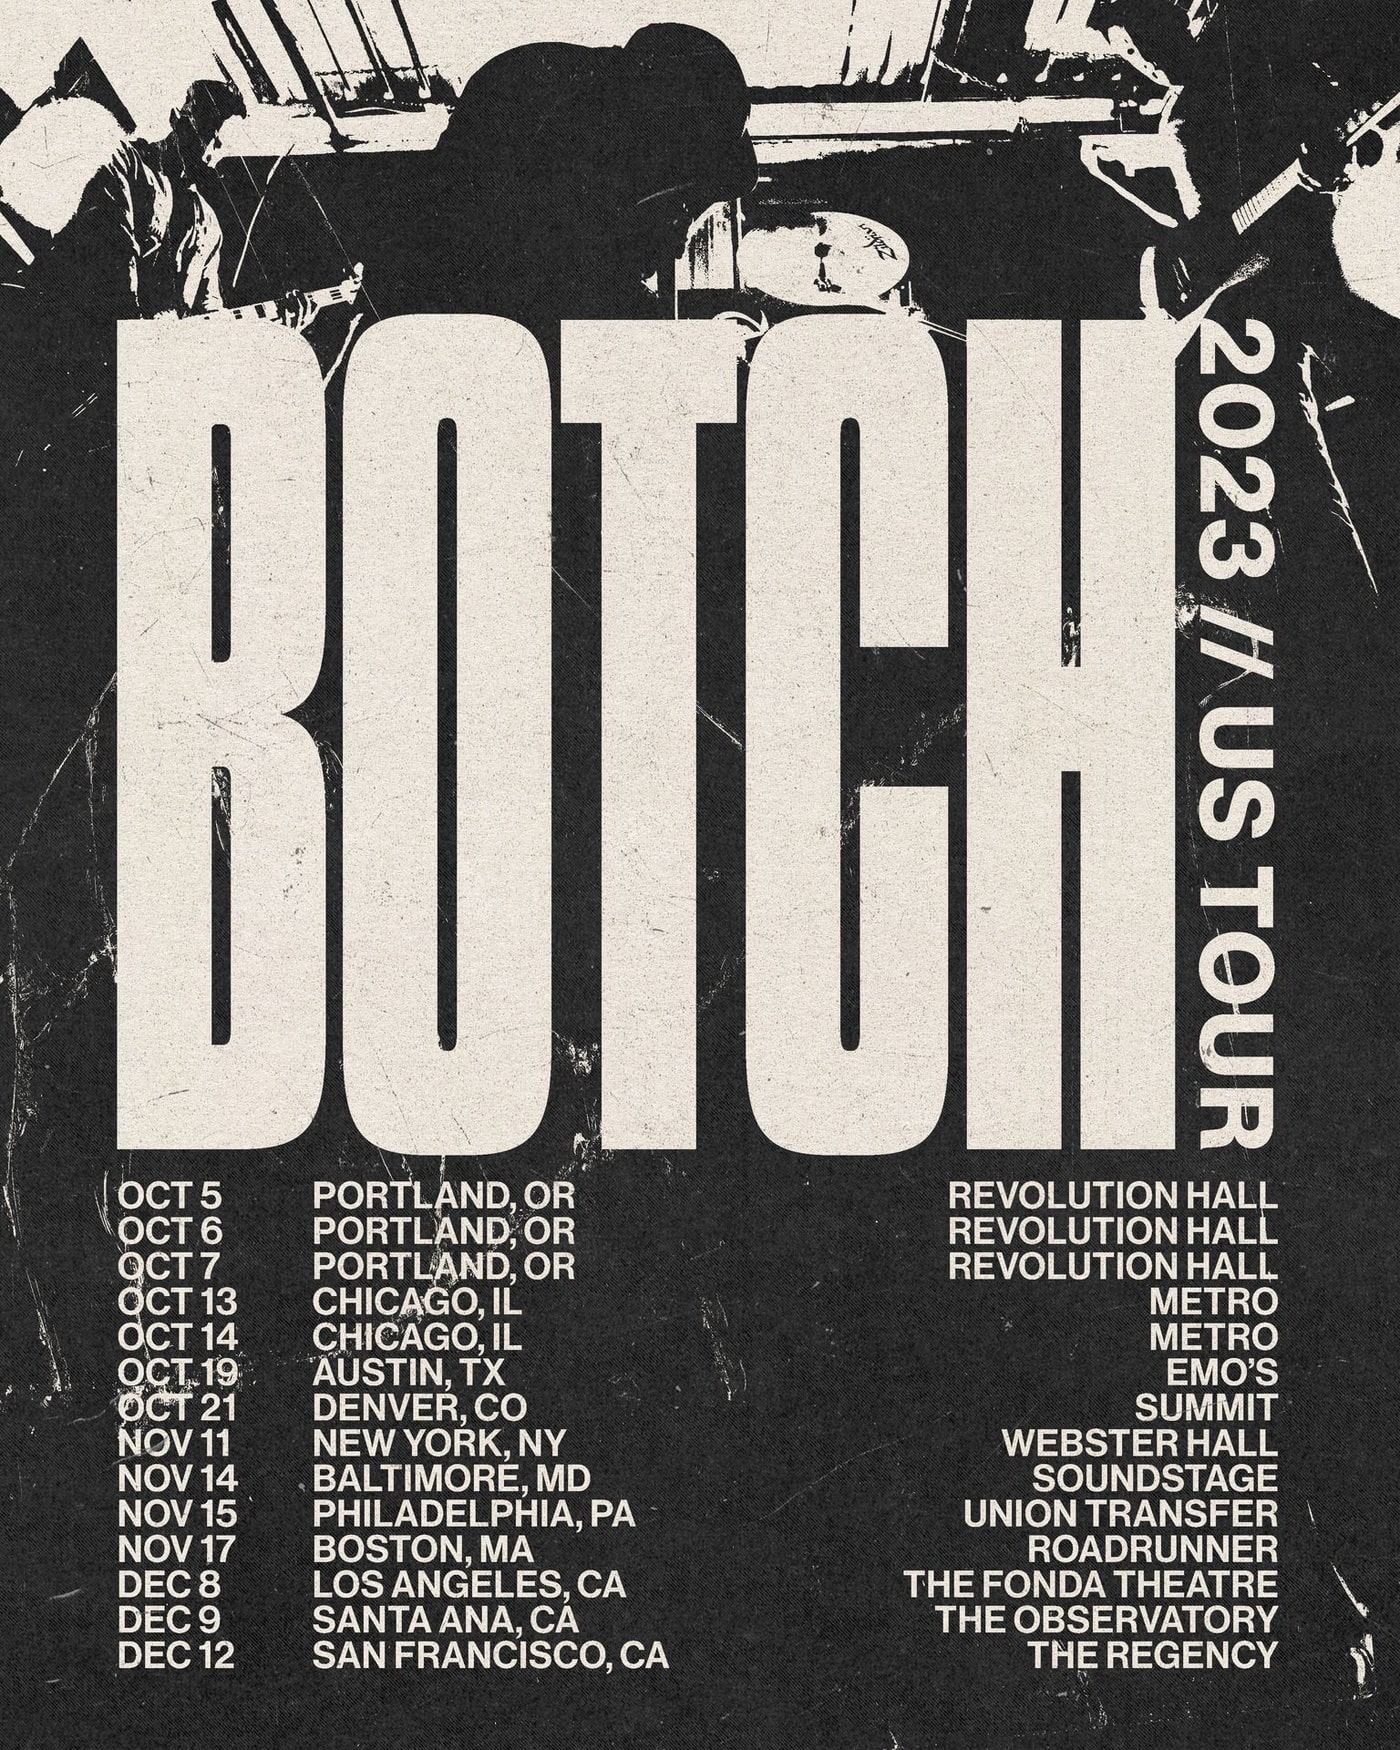 Botch reunion tour